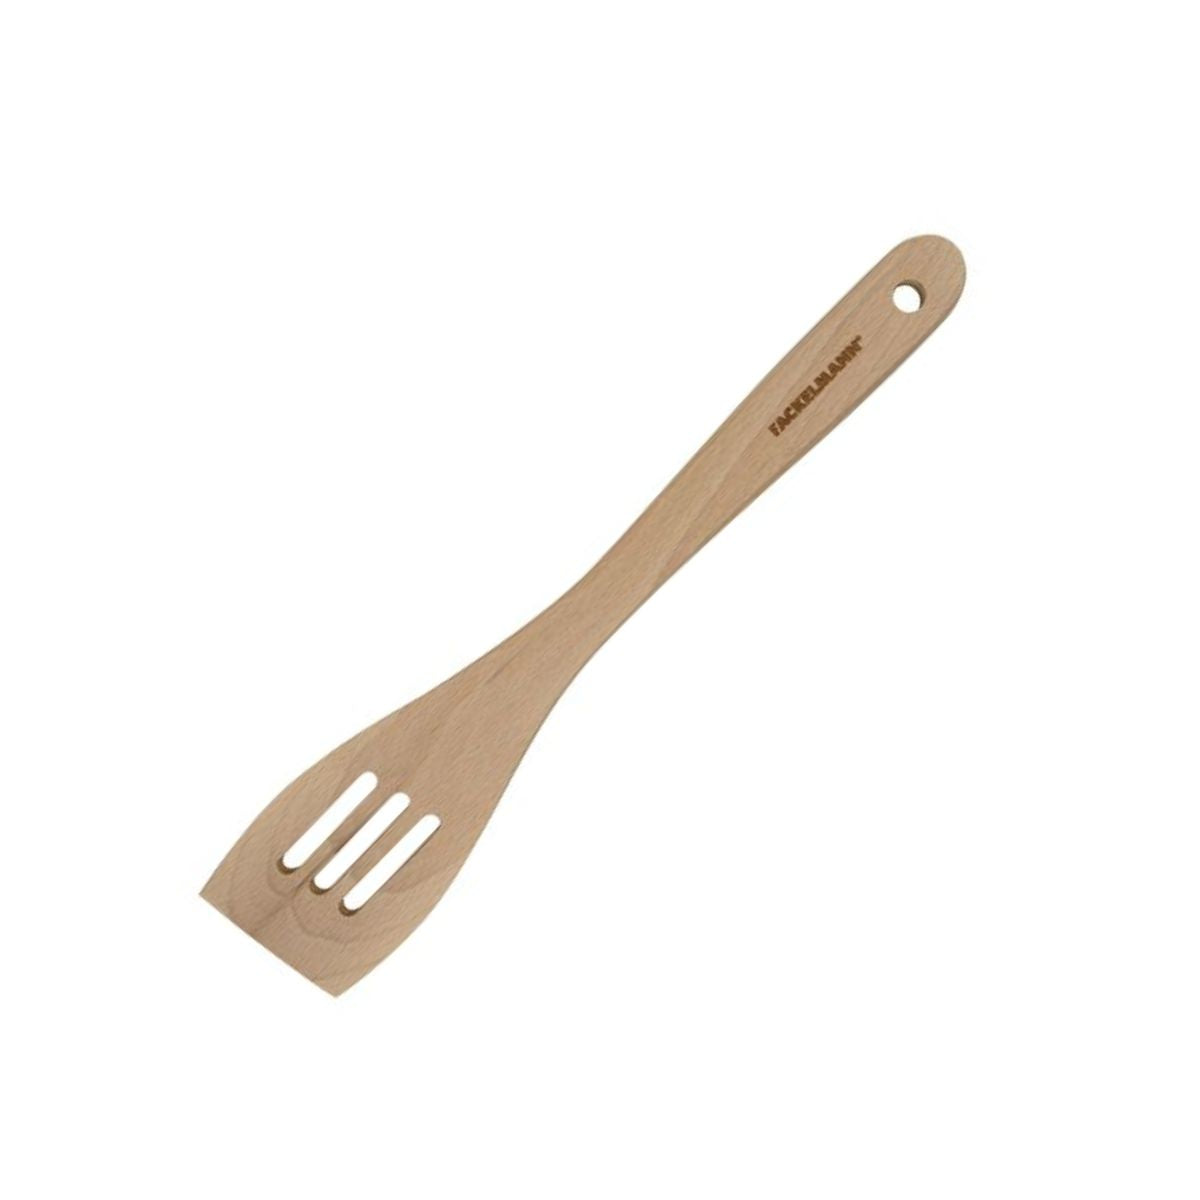 Lot de 2 spatules à poisson (27,9 cm et 31,8 cm), spatule à